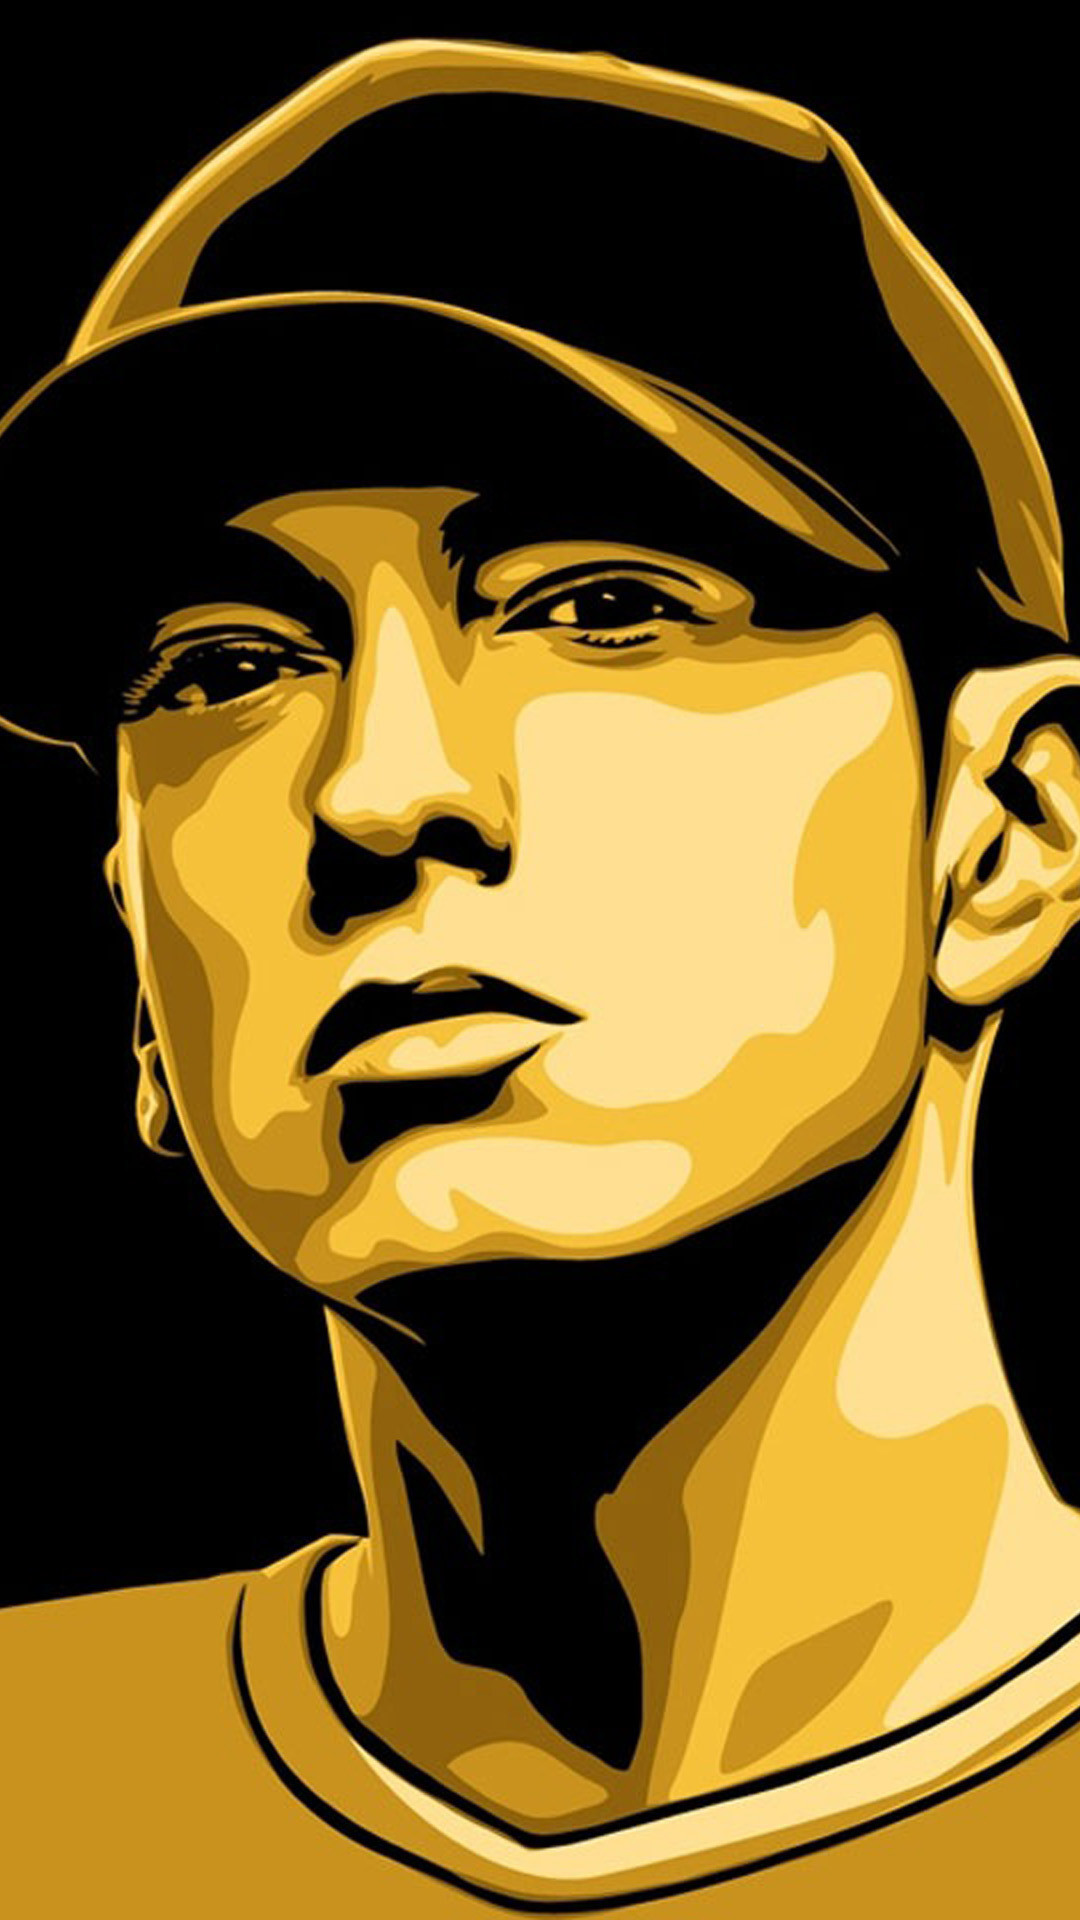 1080x1920 Eminem_2 Galaxy S5 Wallpaper